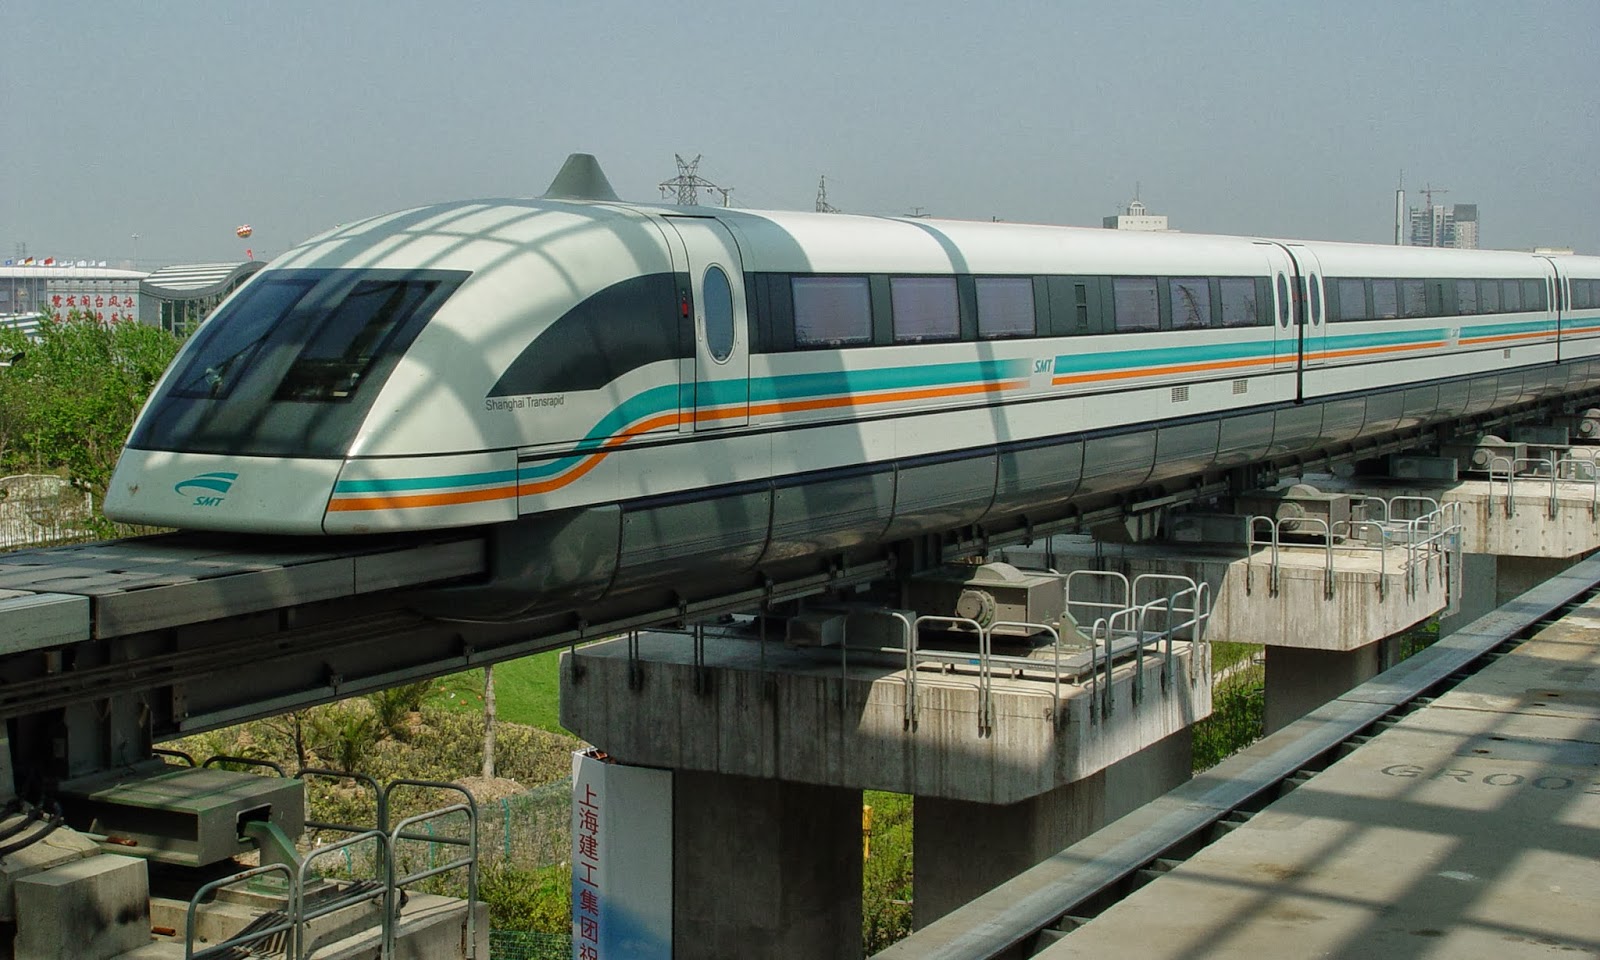 上海磁浮列车攻略-磁浮列车门票价格多少钱-团购票价预定优惠-景点地址图片-【携程攻略】